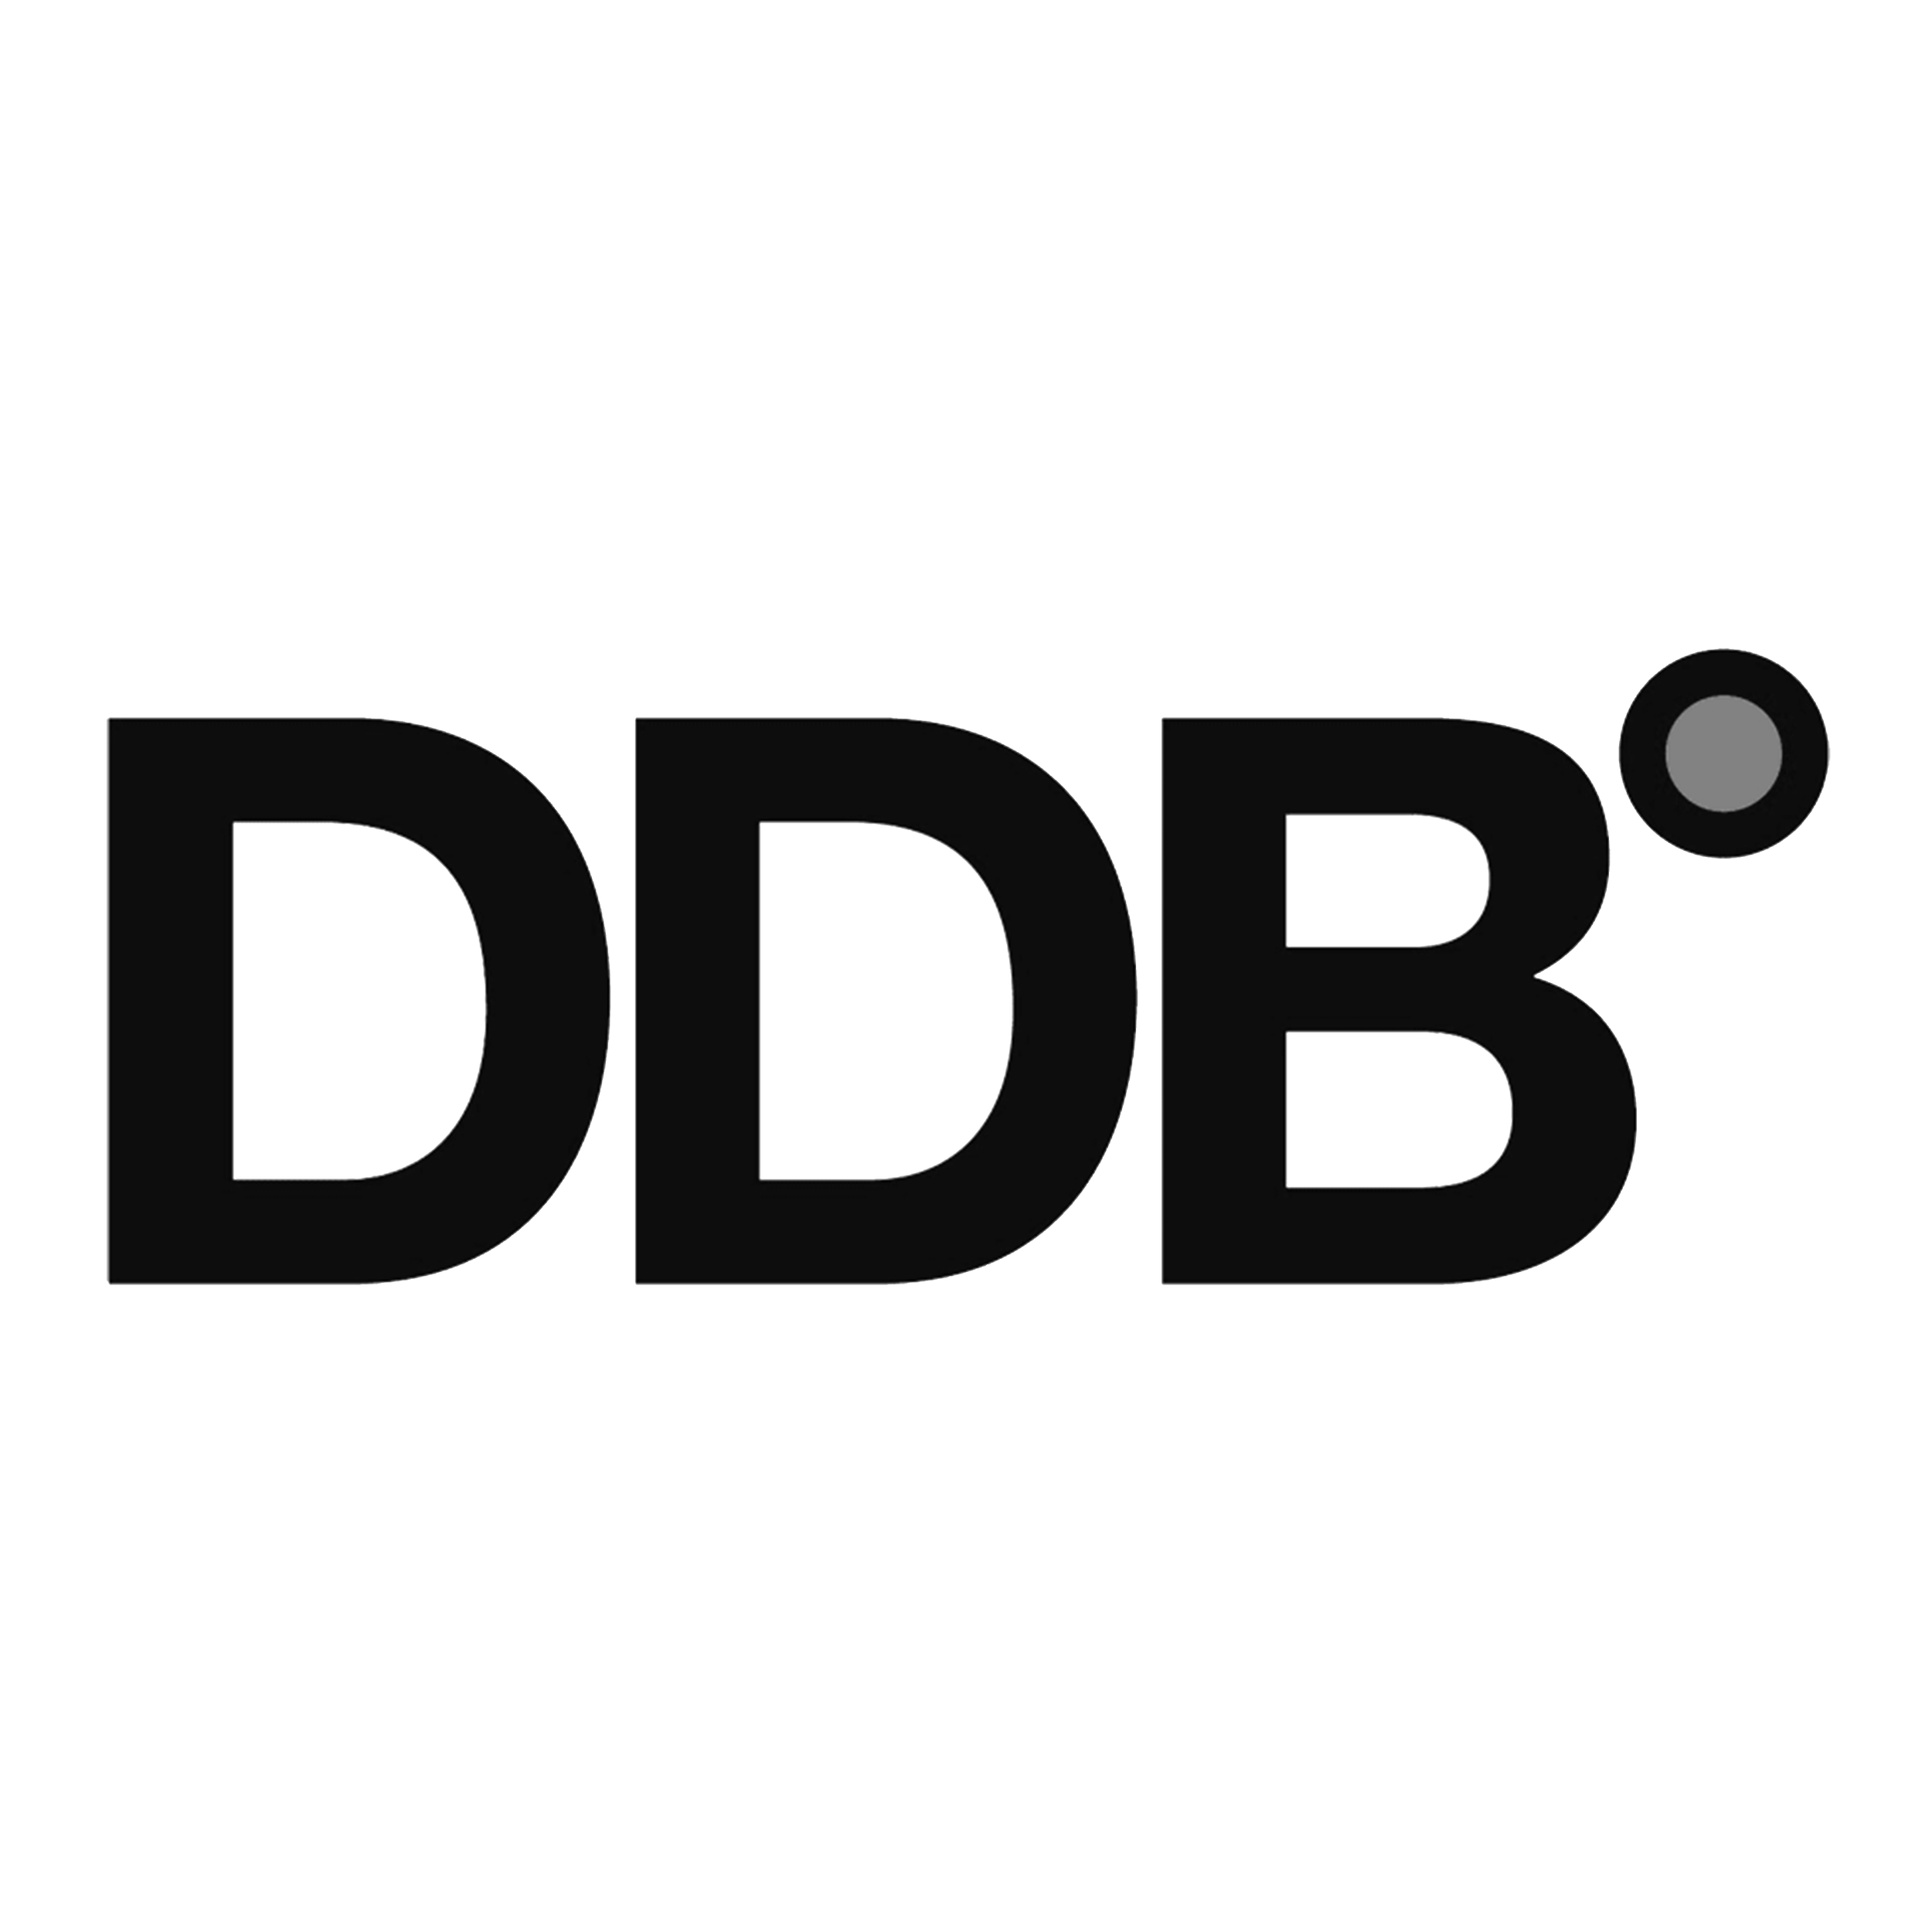 021_ddb-logo copy copy.png